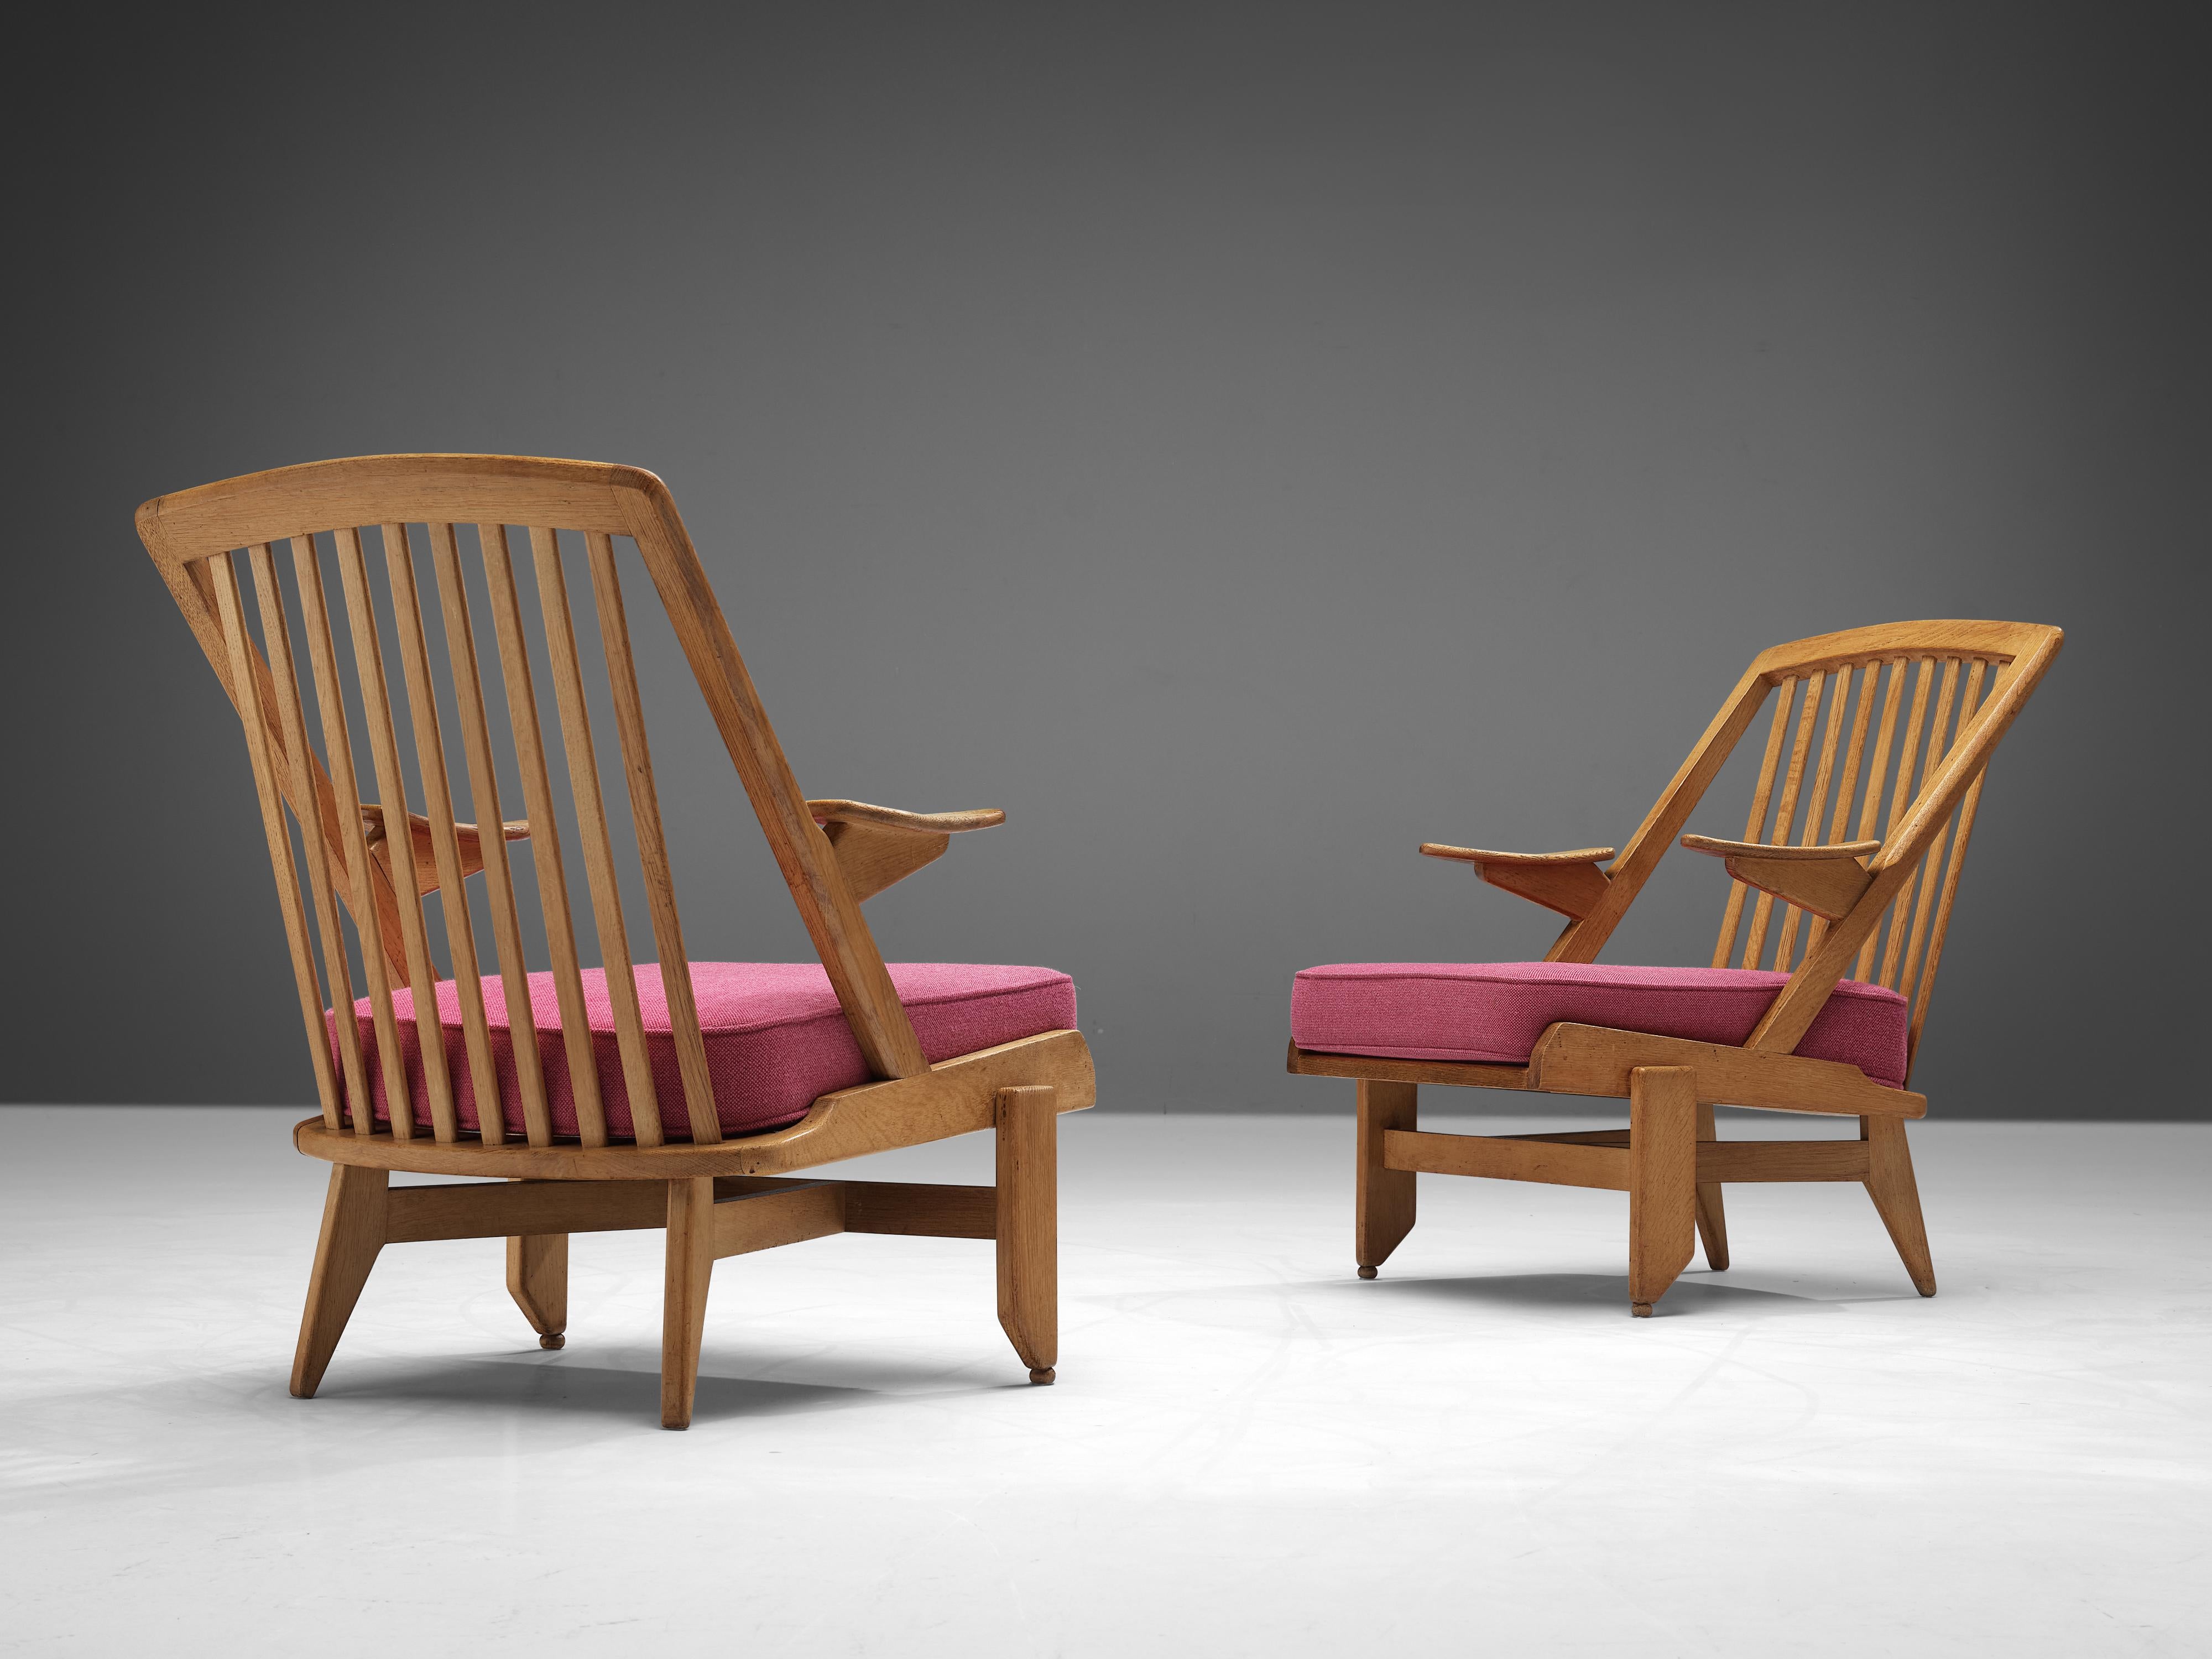 Guillerme et Chambron, Paar Loungesessel, rosa Stoff, Eiche, Frankreich, 1960er

Das französische Designerduo ist bekannt für seine äußerst hochwertigen Möbel aus massiver Eiche, von denen dieses Set ein weiteres gutes Beispiel ist. Diese Stühle